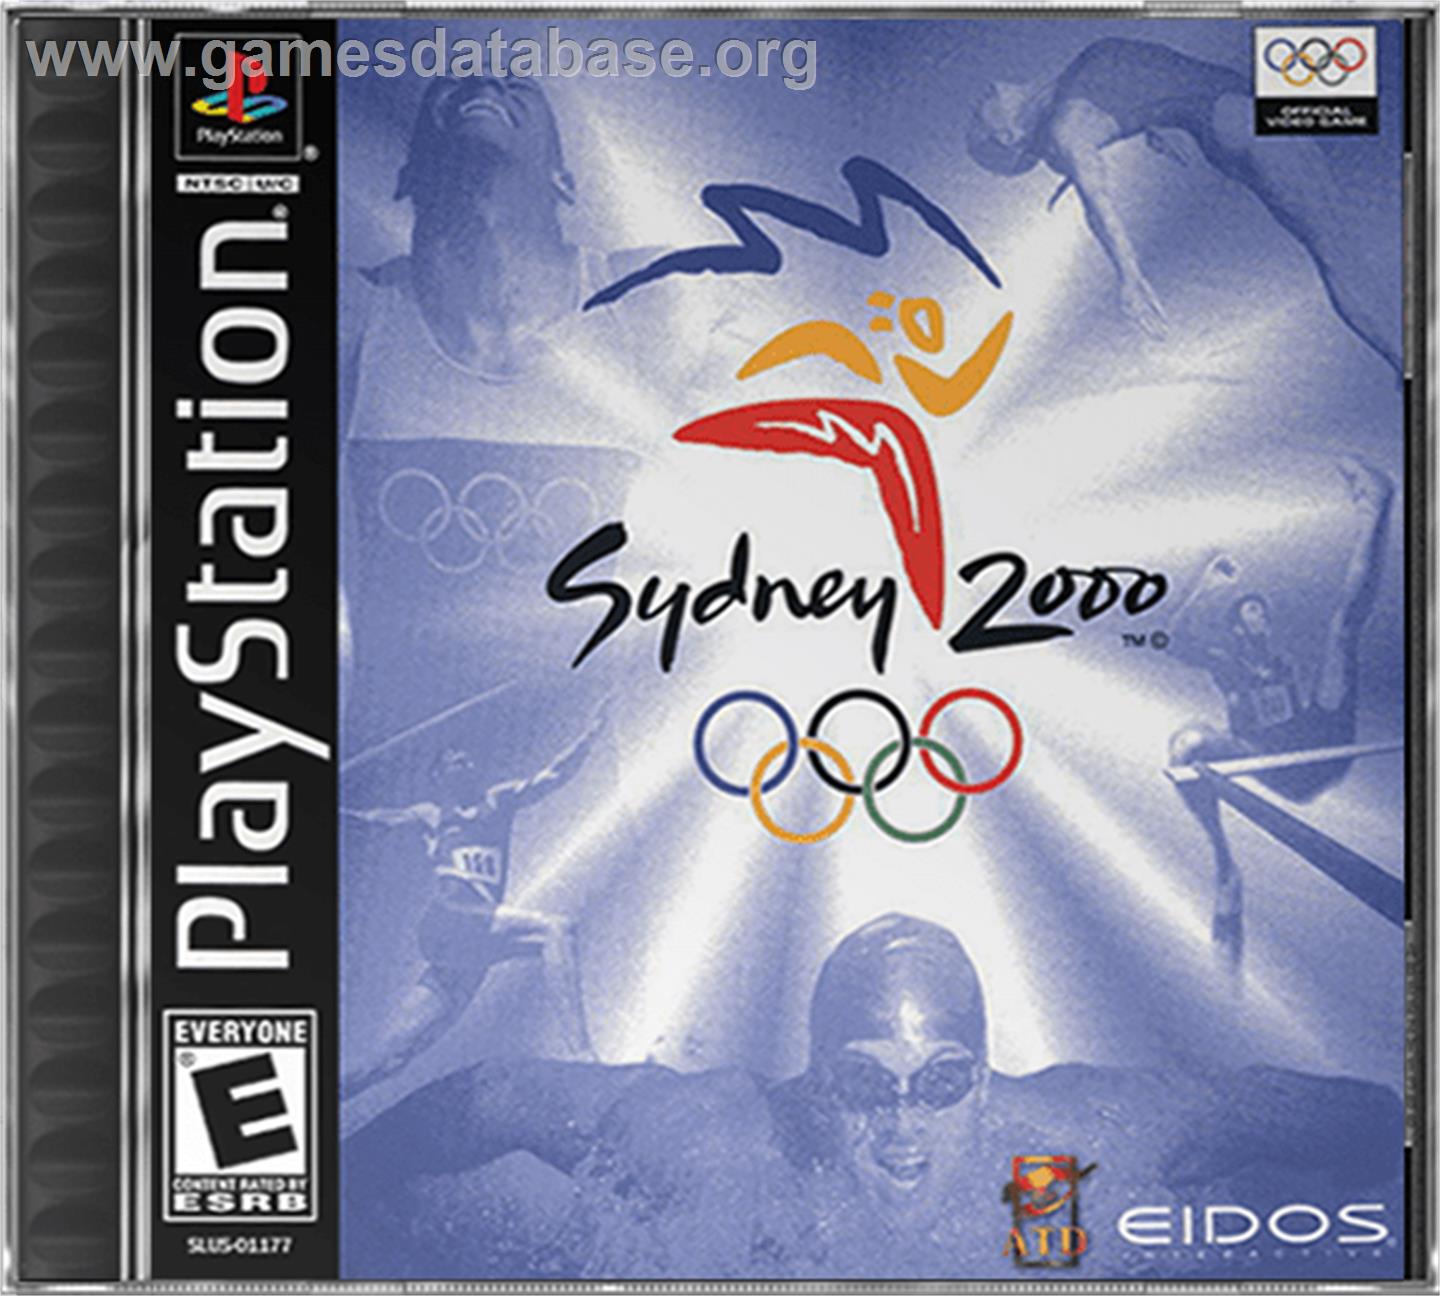 Sydney 2000 - Sony Playstation - Artwork - Box